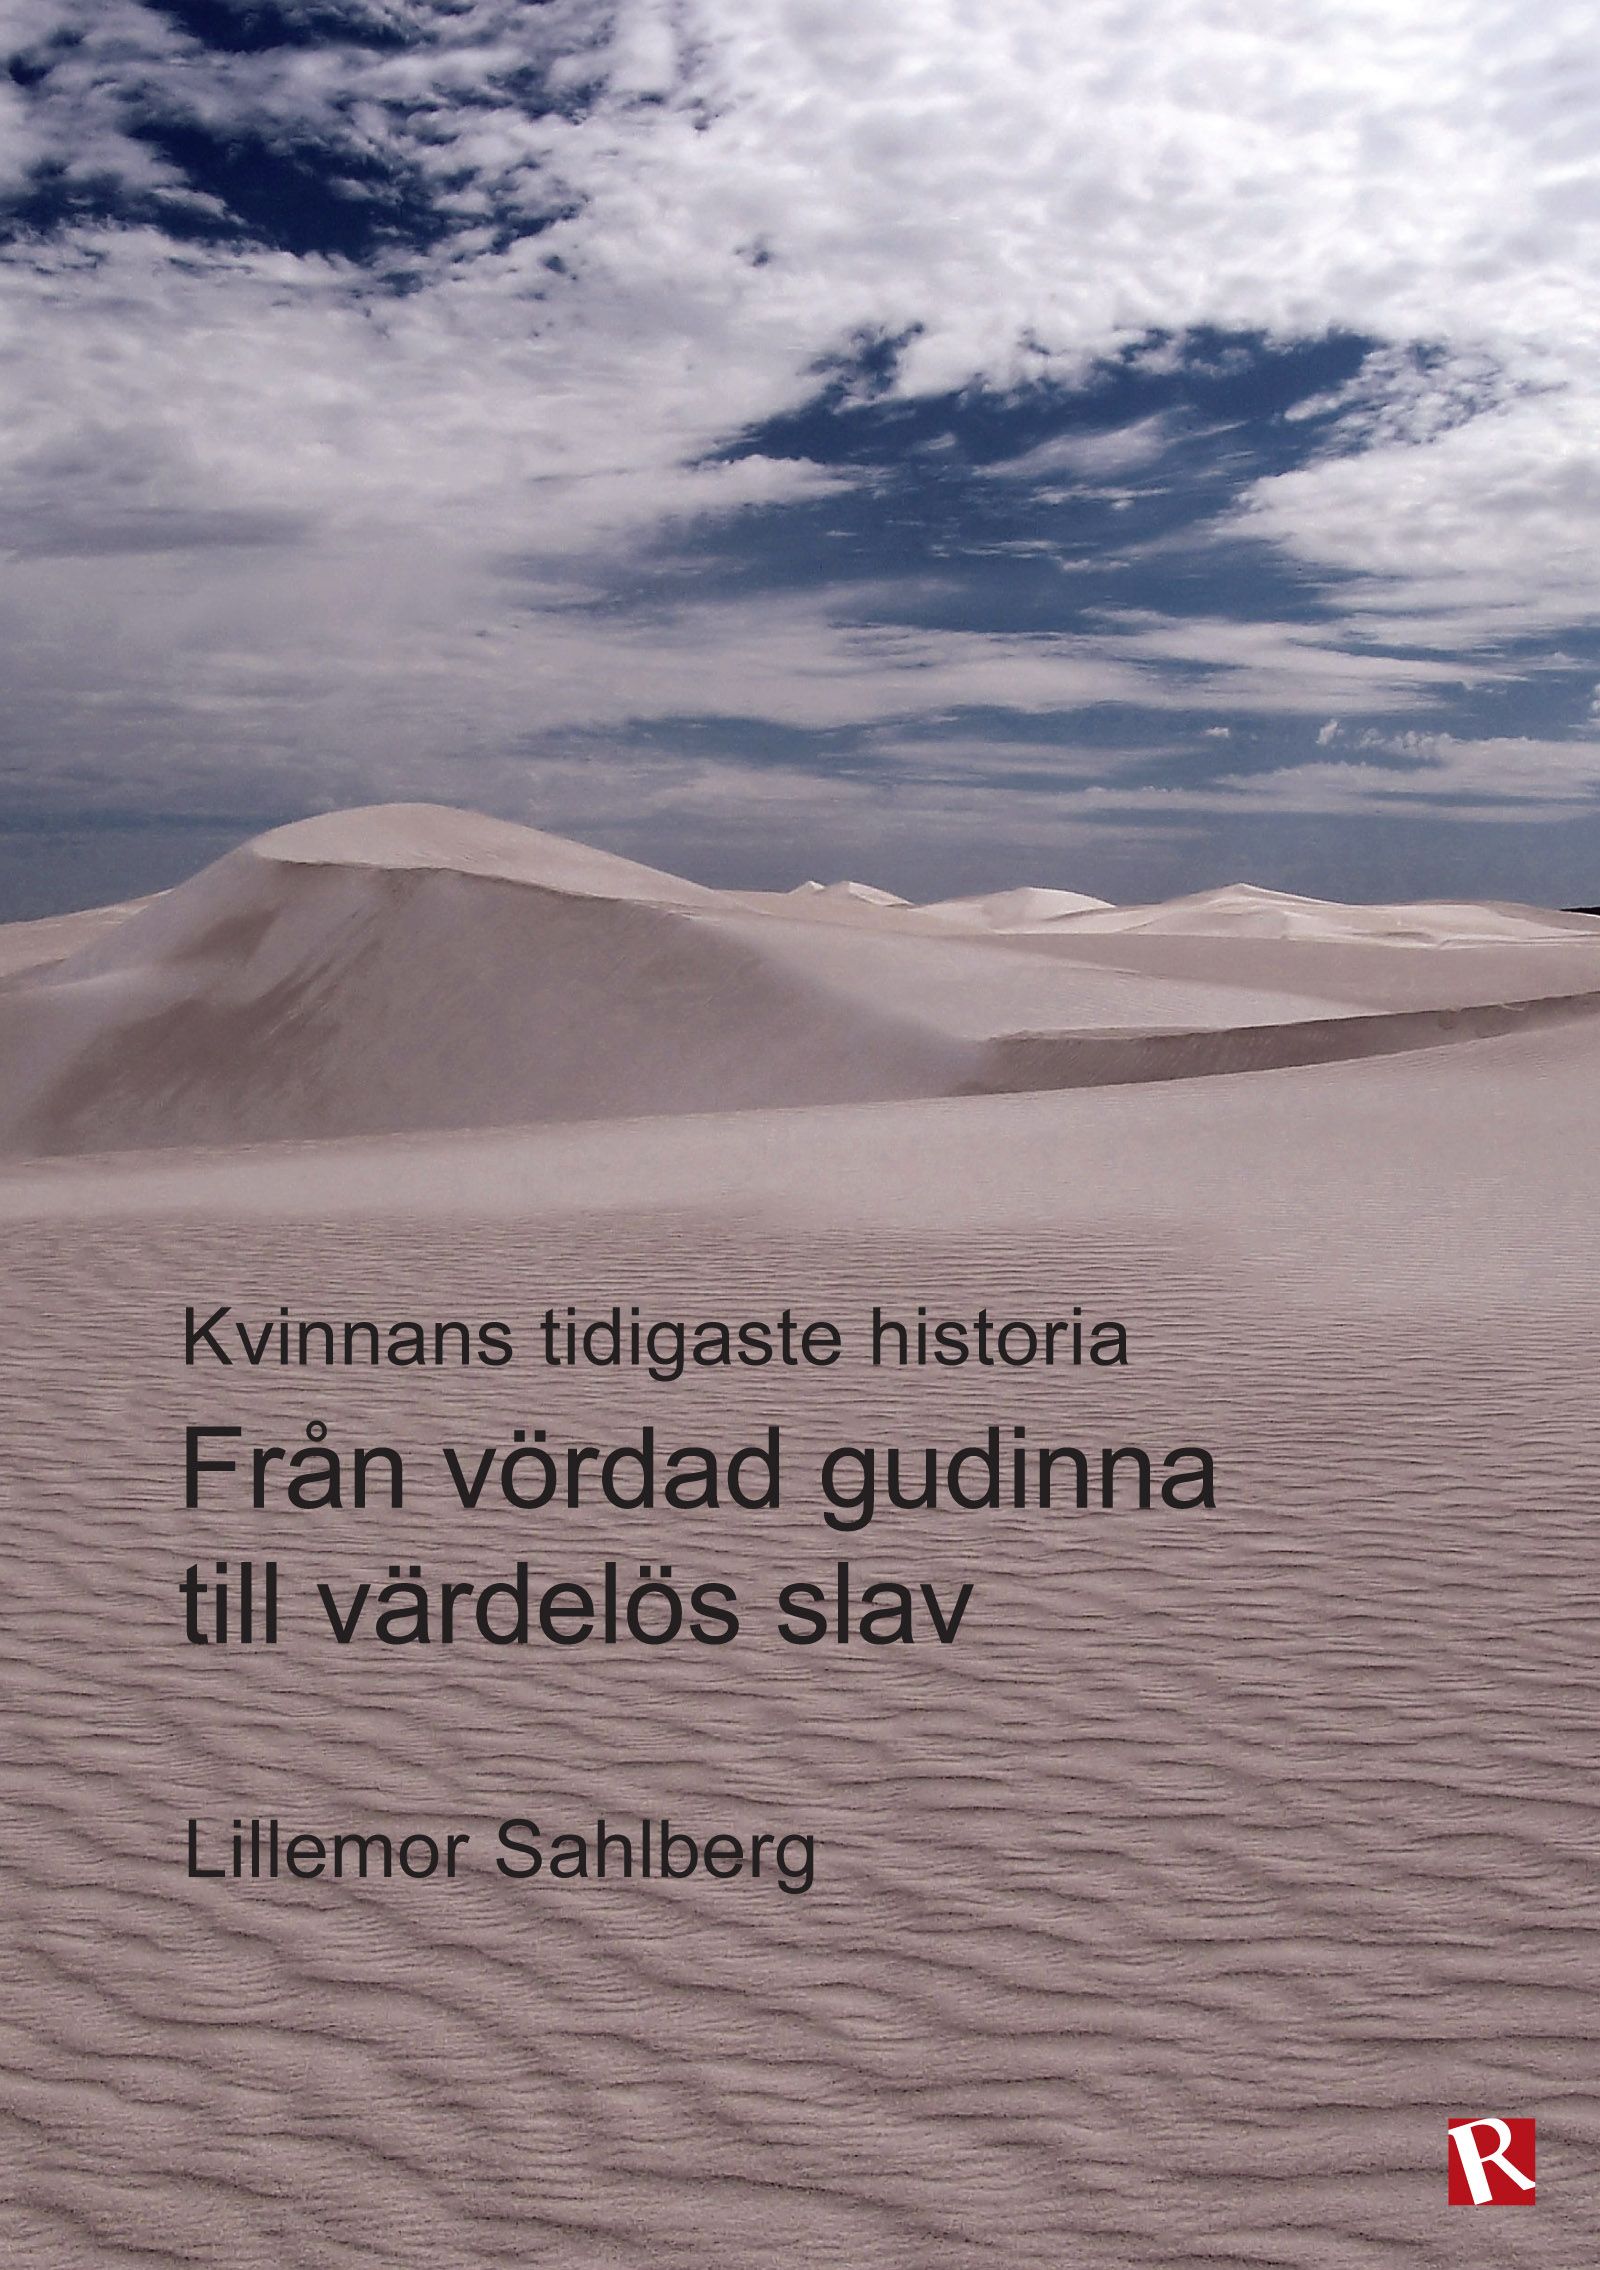 Från vördad gudinna till värdelös slav : Kvinnans tidigaste historia, e-bog af Lillemor Sahlberg